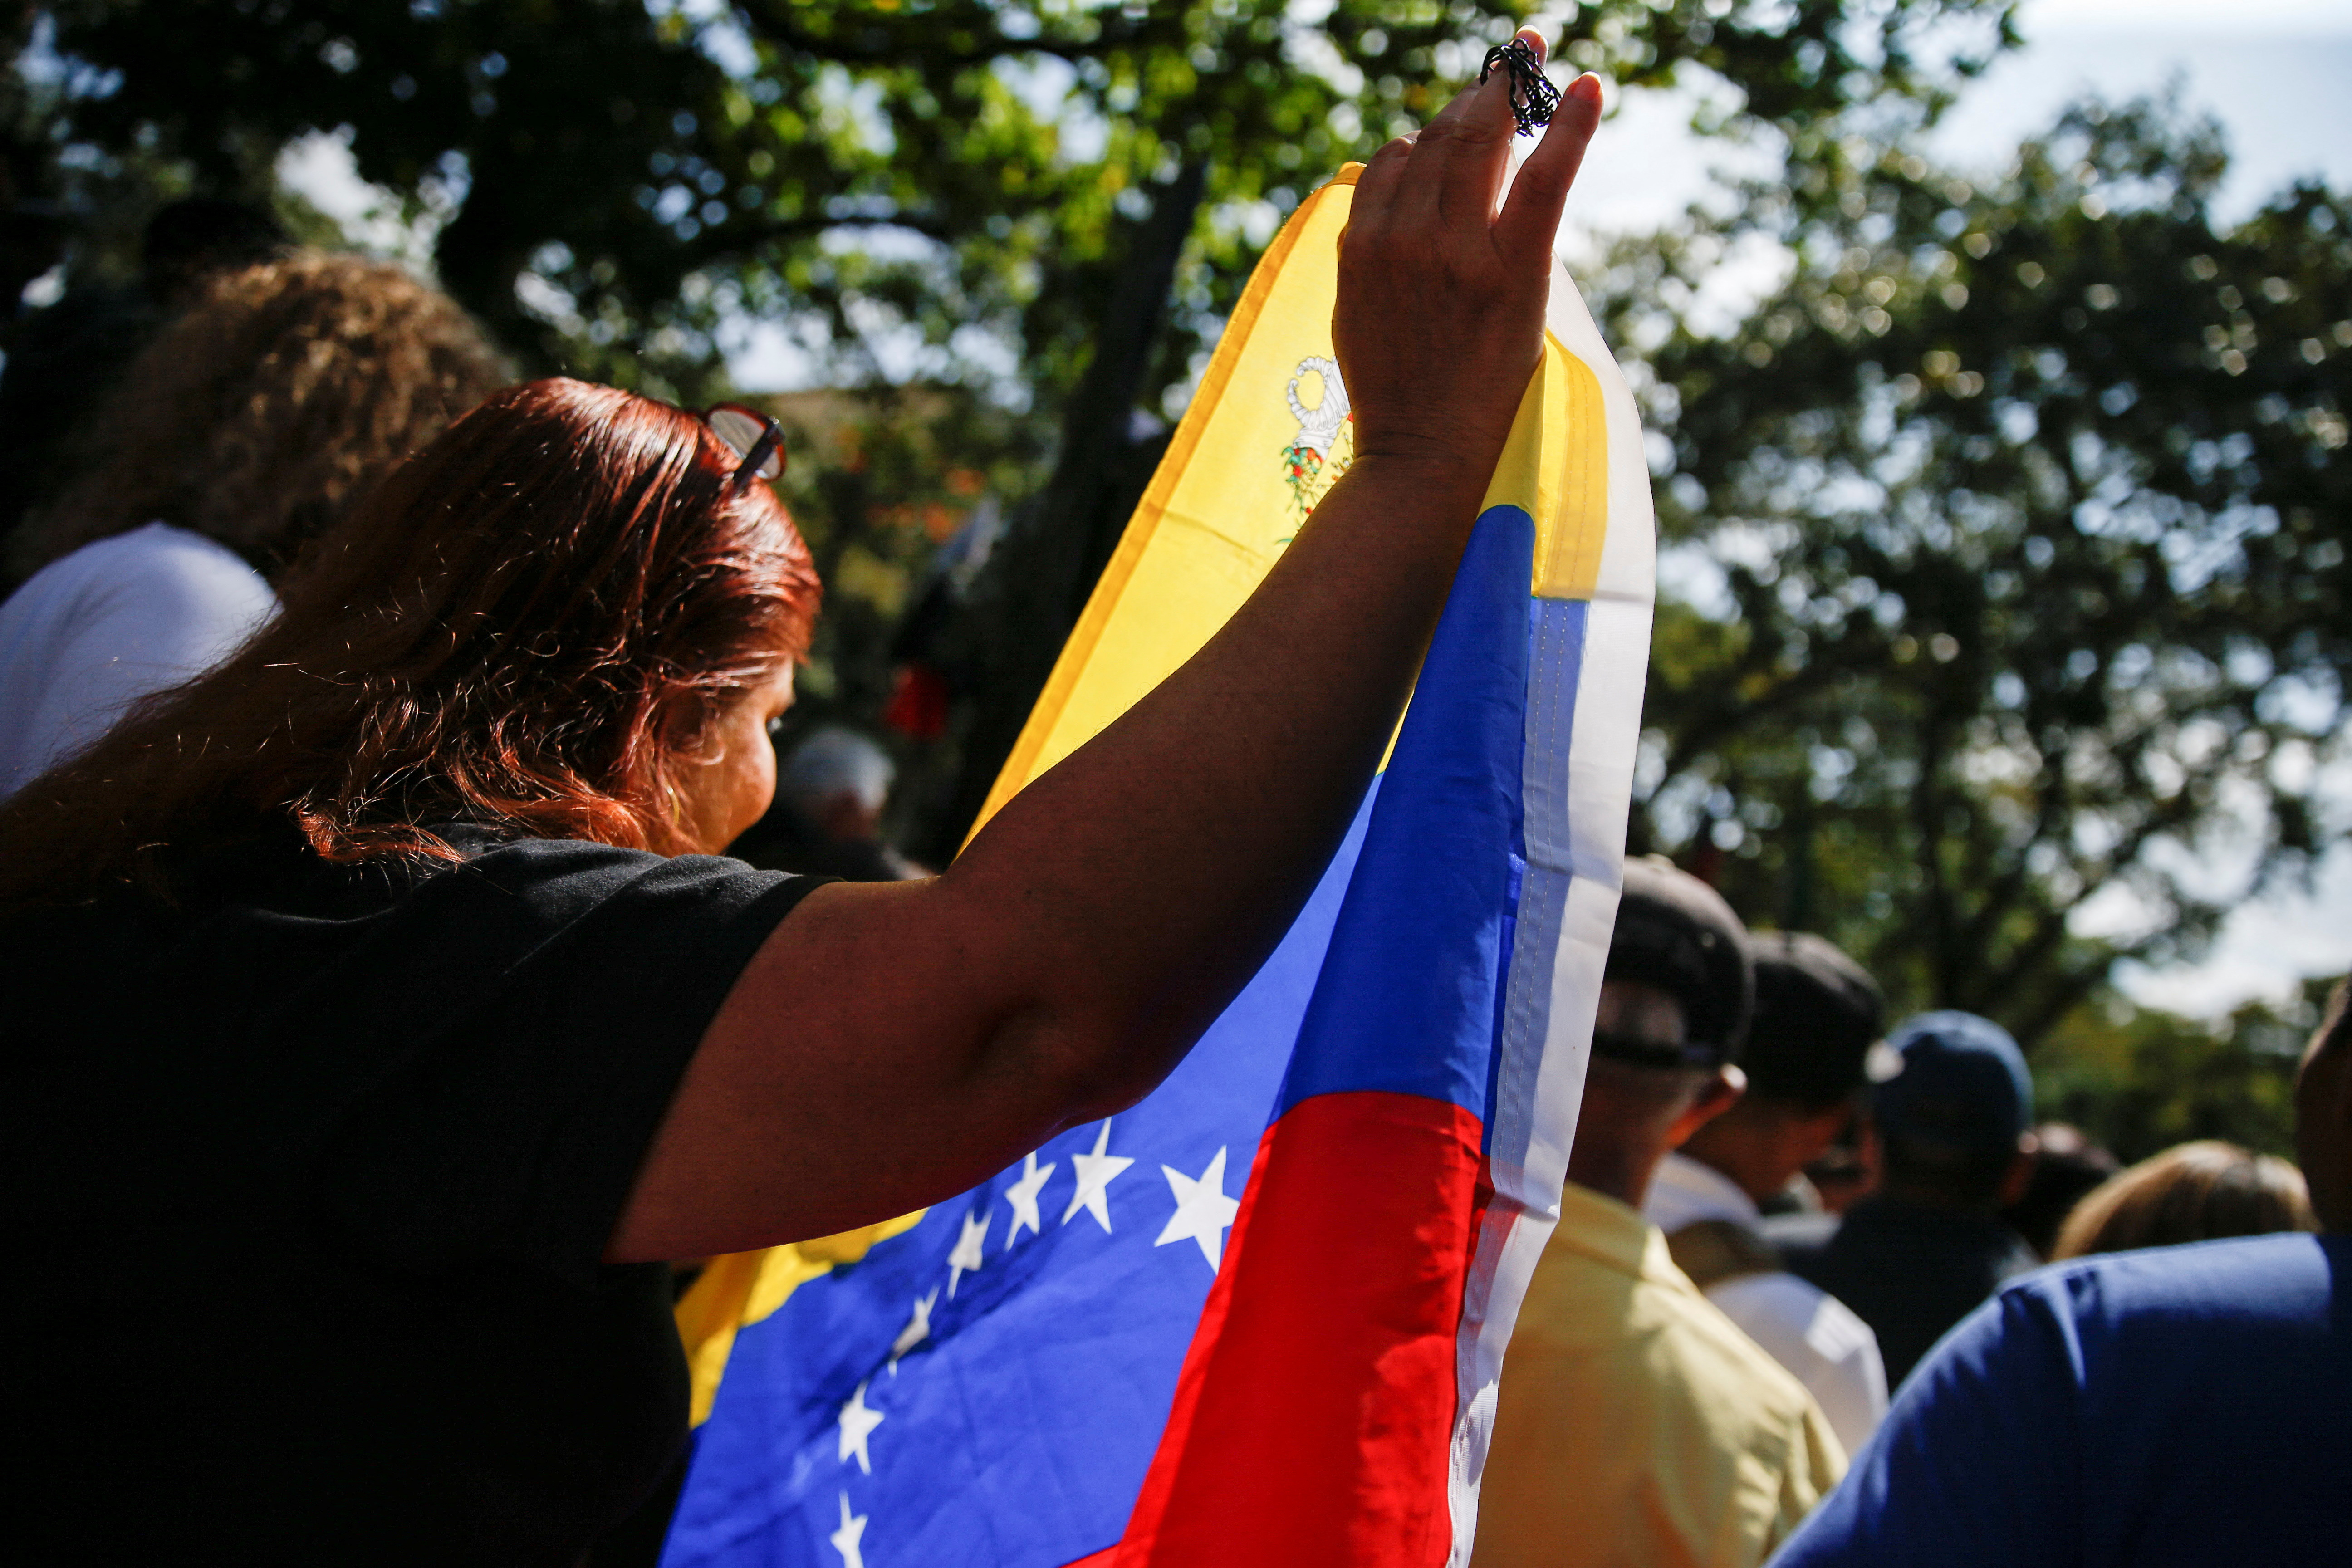 “La restauración de las instituciones y prácticas democráticas en Venezuela es esencial", subraya el escrito (REUTERS)